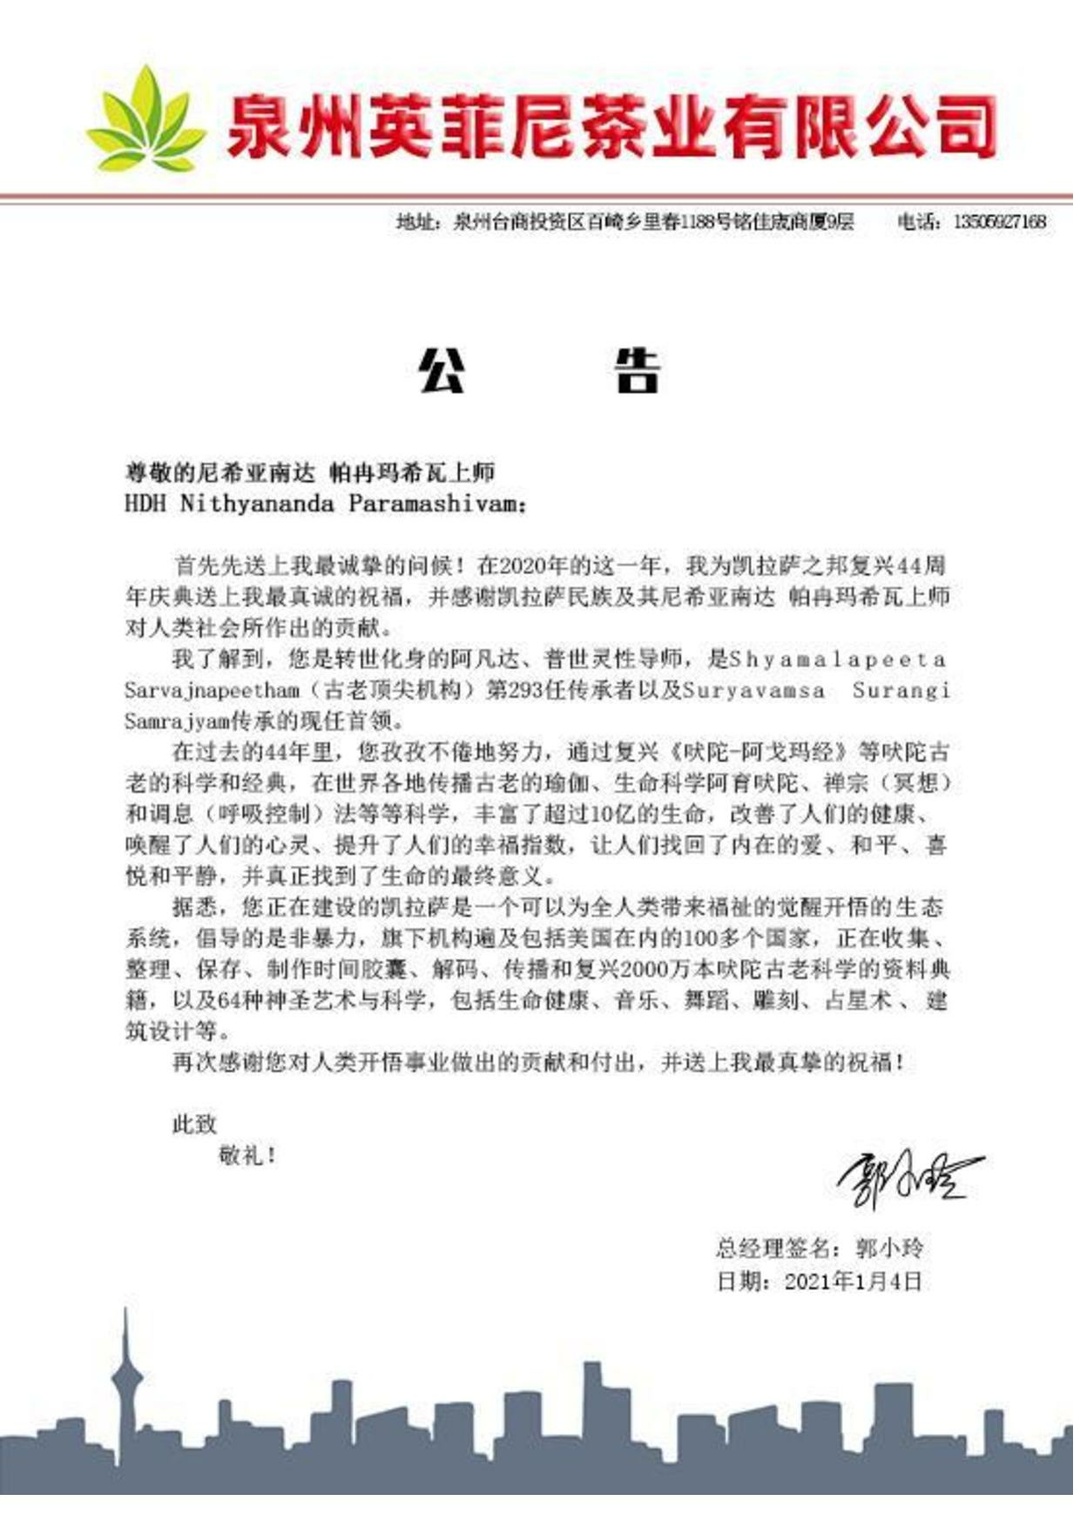 China---Xiao-Ling-Guo---5-Jan-2021-(Proclamation)-1h1BC2Mu88 S9tvwnFegtn1Zlirn4mZu.pdf